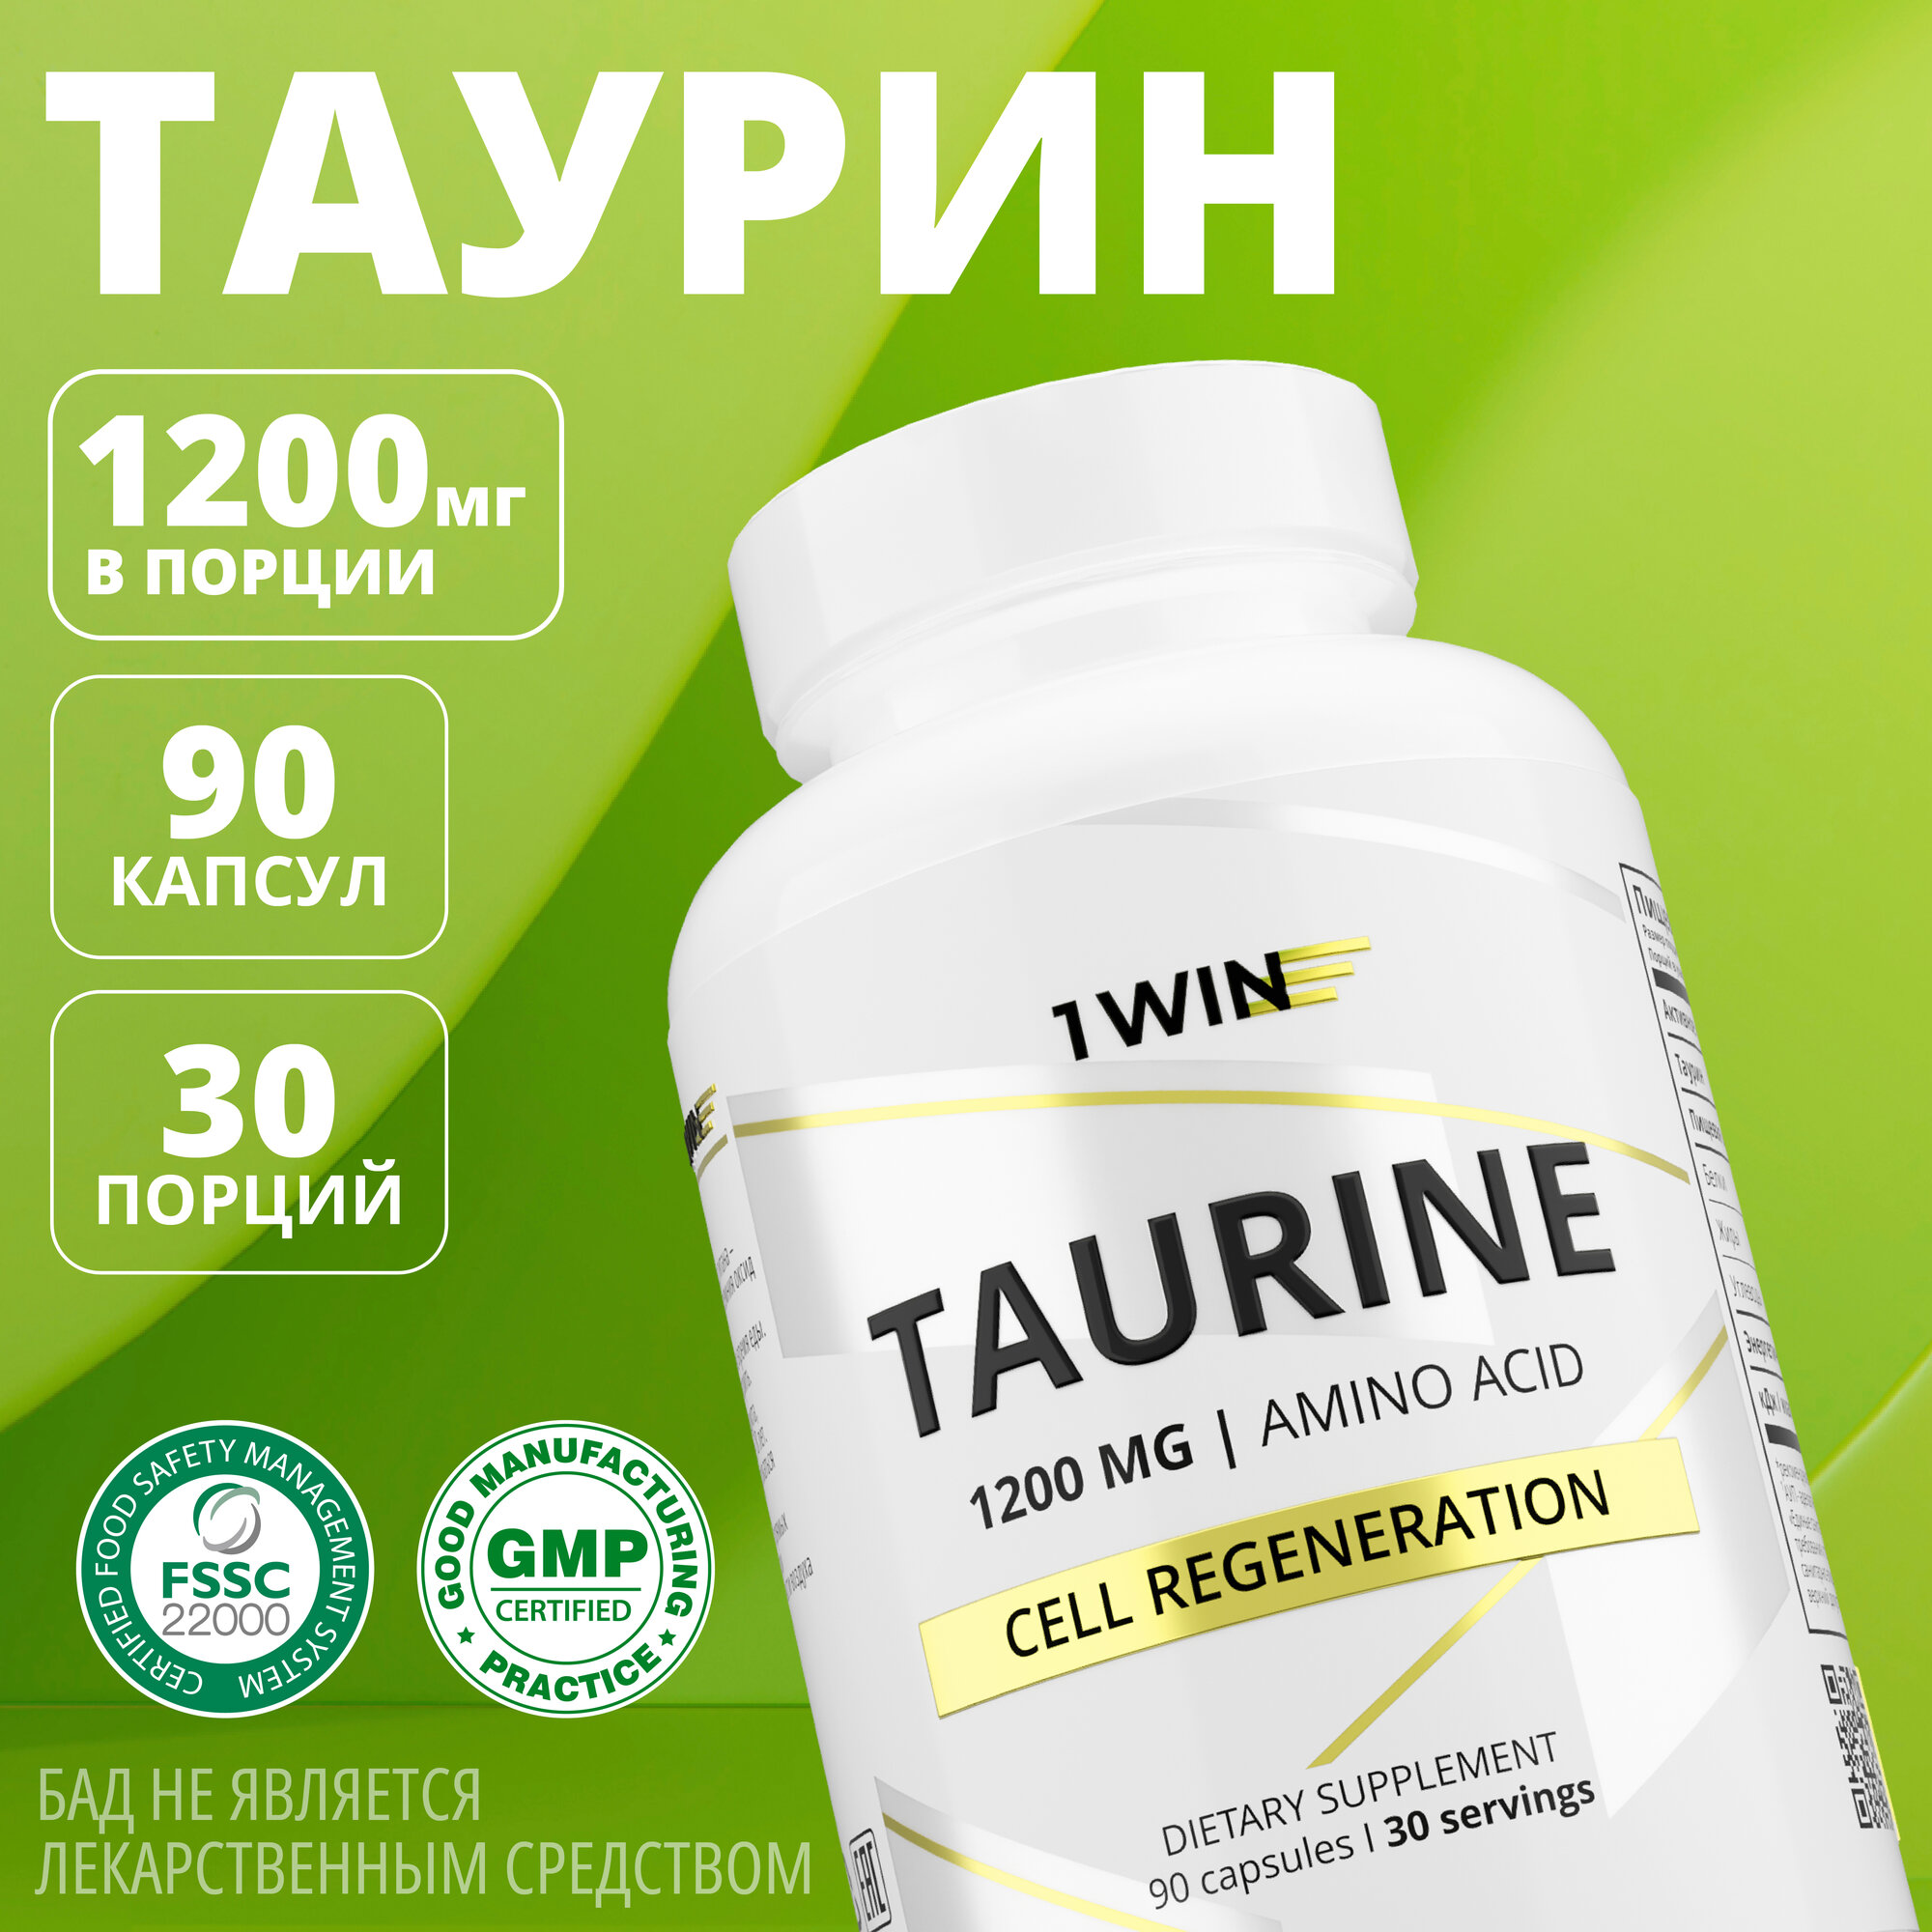 1WIN Таурин 1200 мг, для сердца, энергии и зрения, аминокислота для спортсменов, 90 капсул